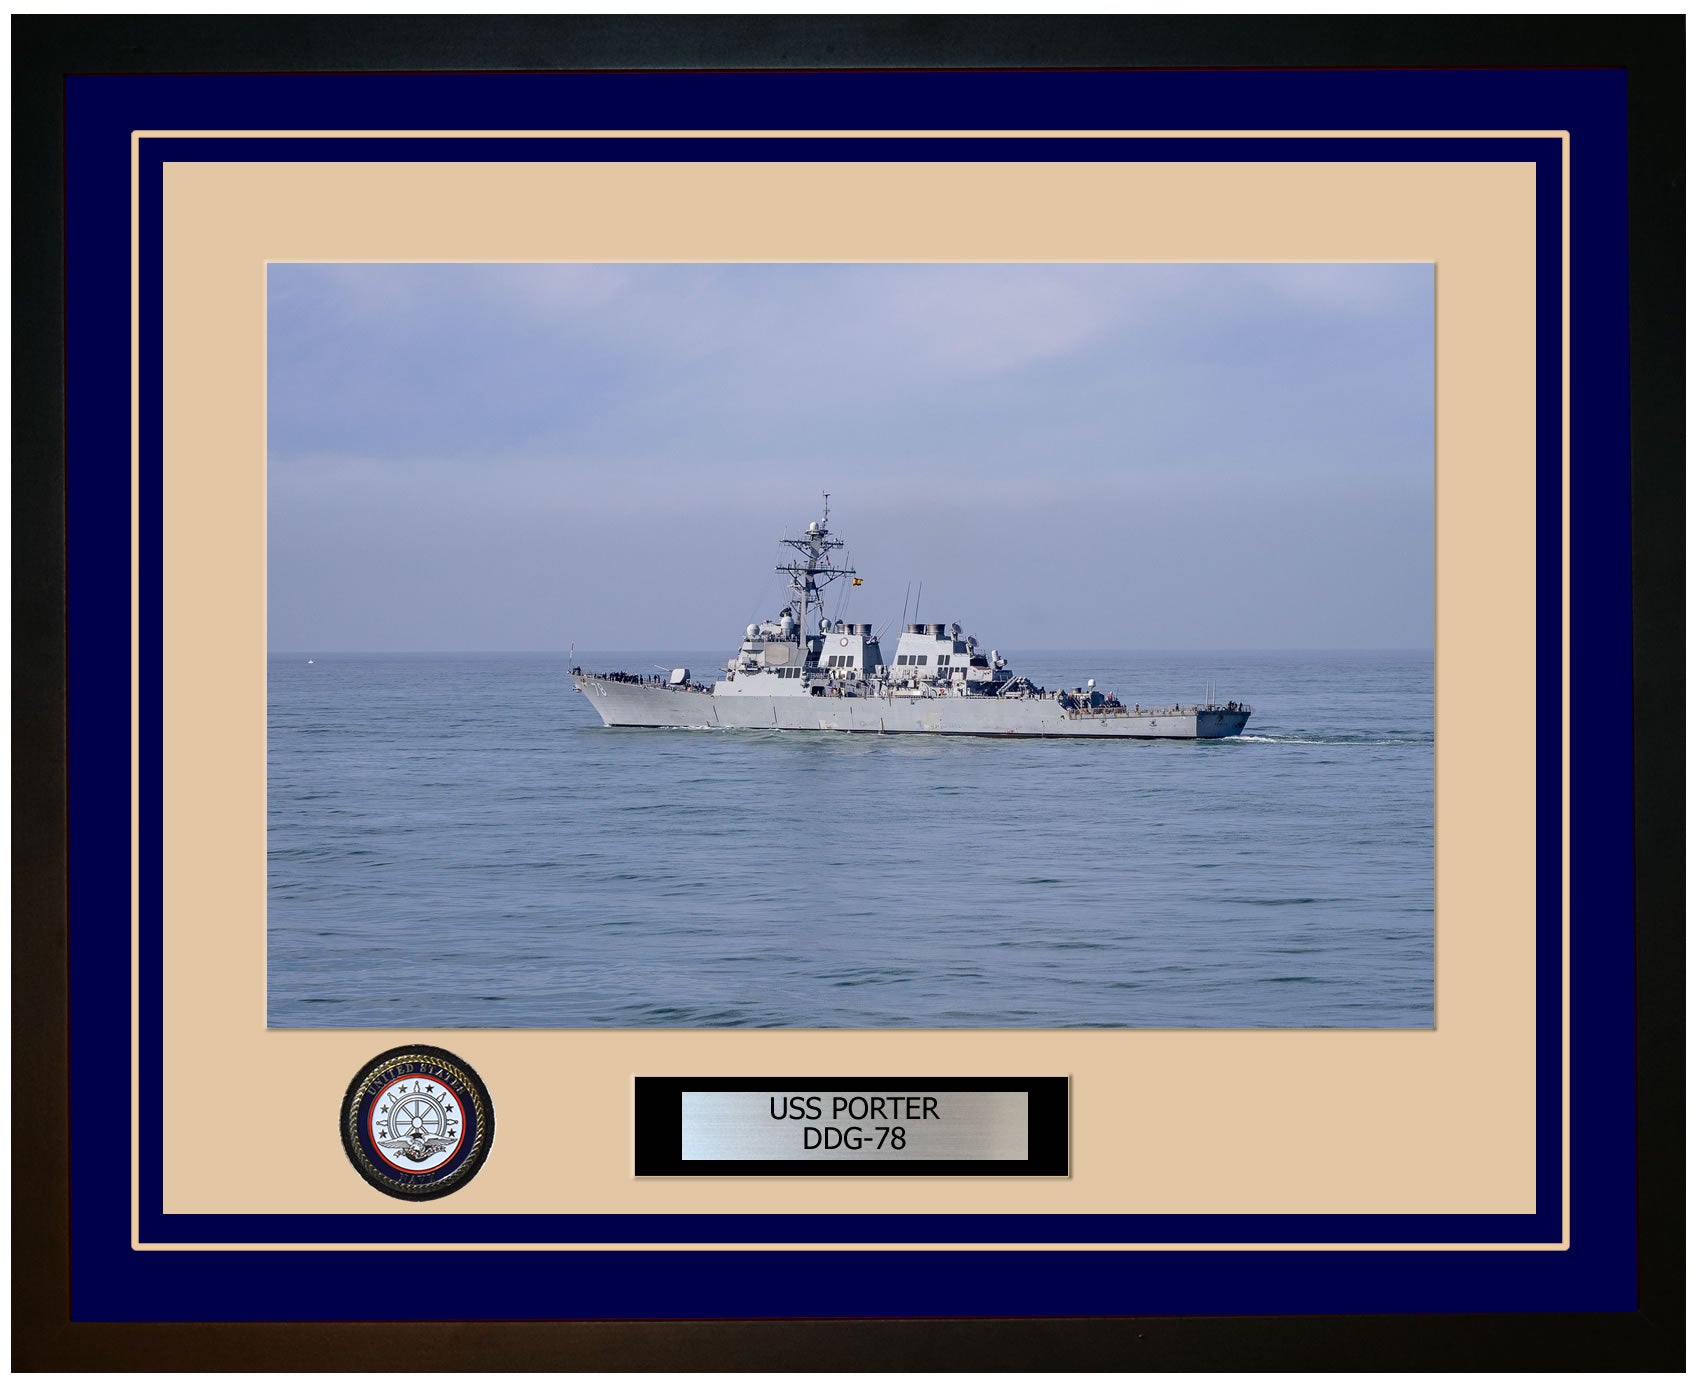 USS PORTER DDG-78 Framed Navy Ship Photo Blue